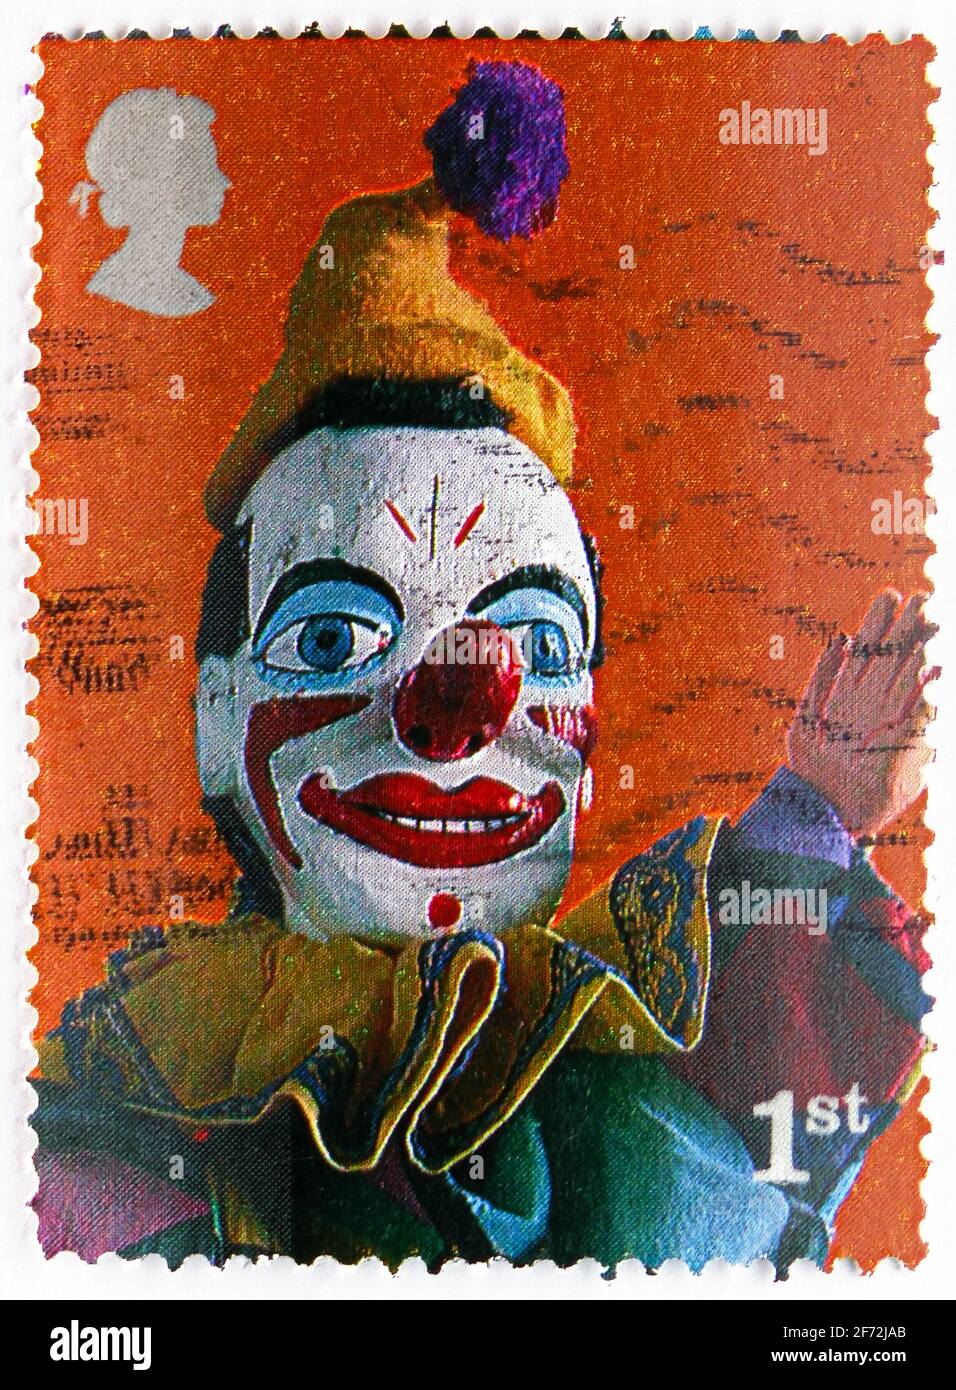 MOSCOU, RUSSIE - 22 DÉCEMBRE 2020: Timbre-poste imprimé au Royaume-Uni montre Clown, Punch and Judy Show Puppets série, vers 2001 Banque D'Images